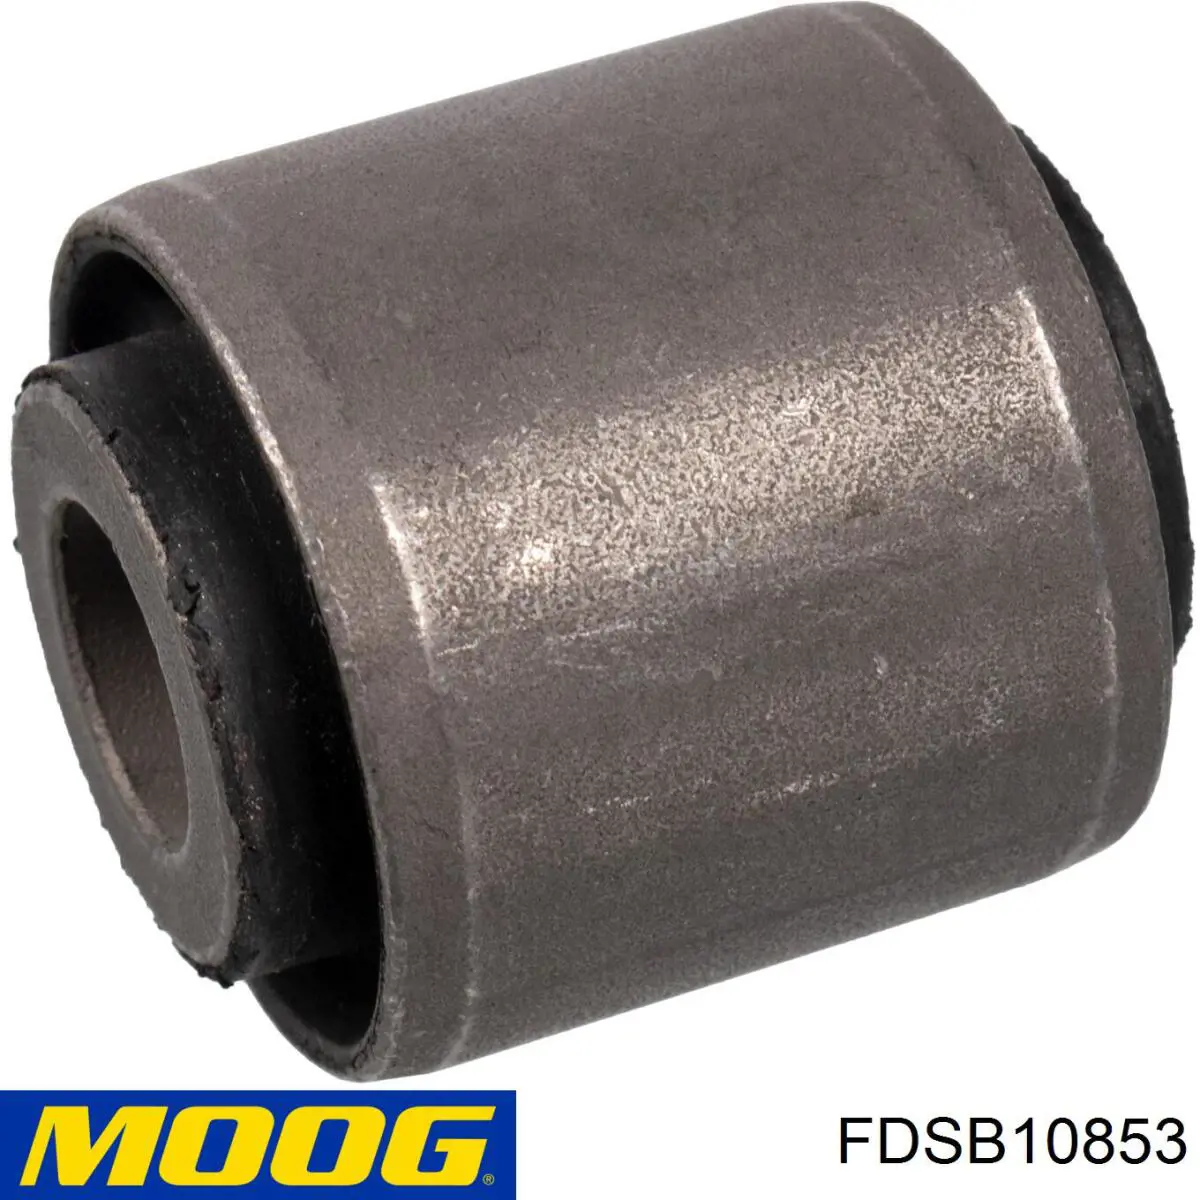 FD-SB-10853 Moog bloco silencioso traseiro de braço oscilante transversal